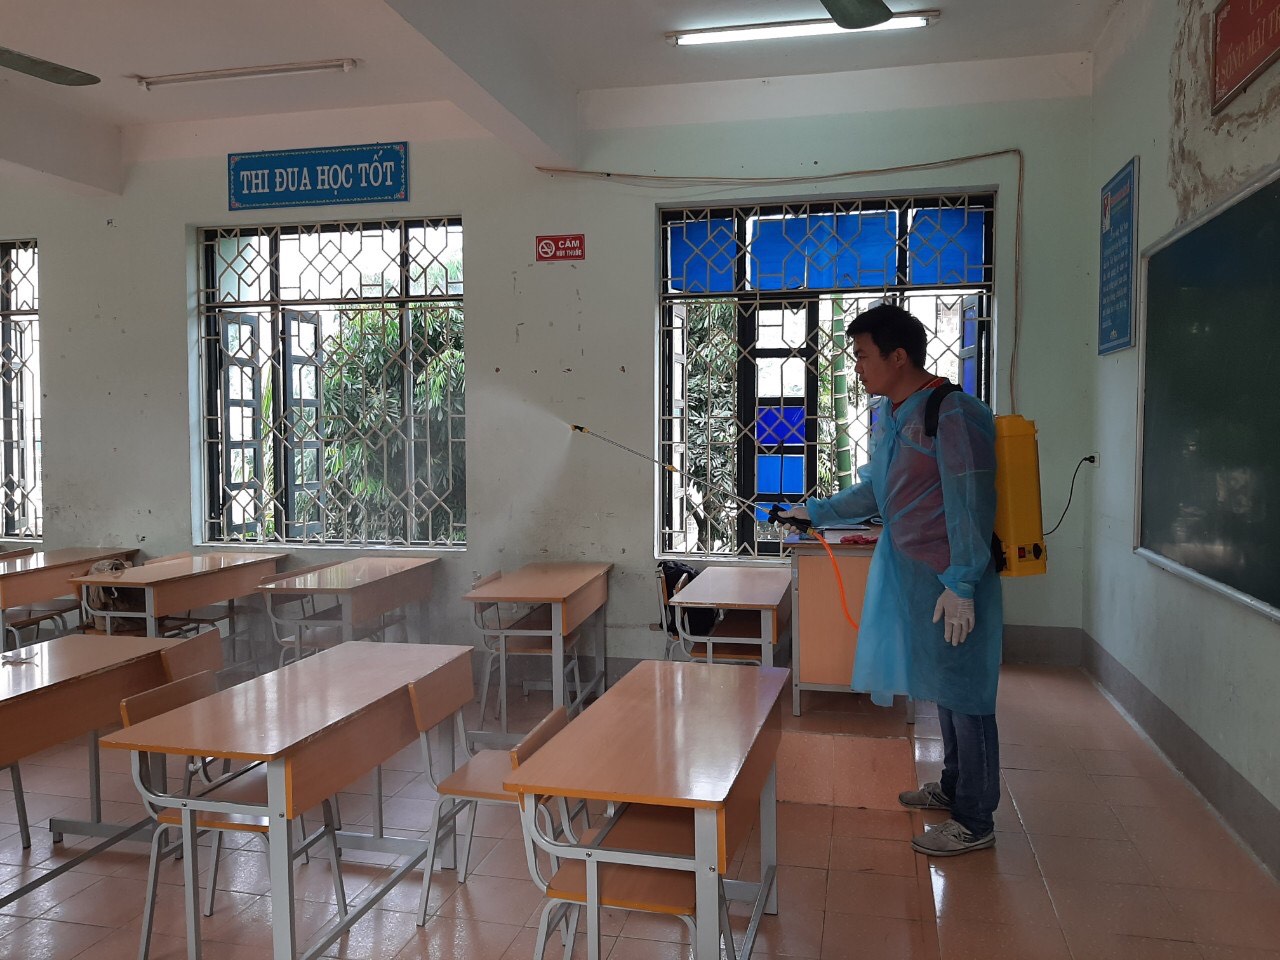 Công tác phòng chống dịch bệnh tại trường THCS Tân Bình: Với mục tiêu phòng bệnh hơn chữa bệnh, trường học không dịch bệnh và phải là nơi an toàn nhất